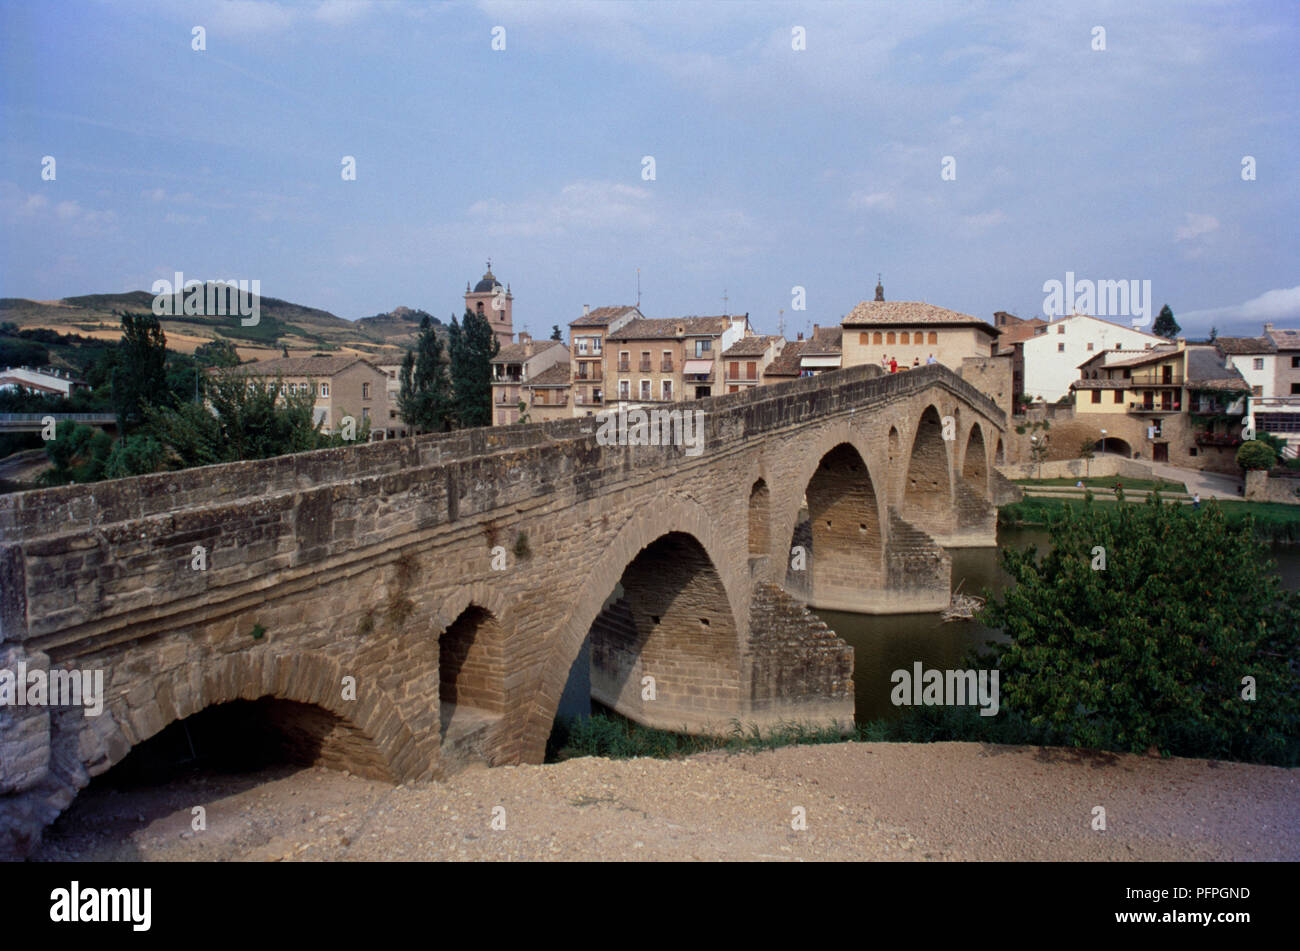 Spain, Northern Spain, Navarra (Navarre), Puente la Reina, Puente de los Peregrinos, 11th century bridge across Rio Arga Stock Photo